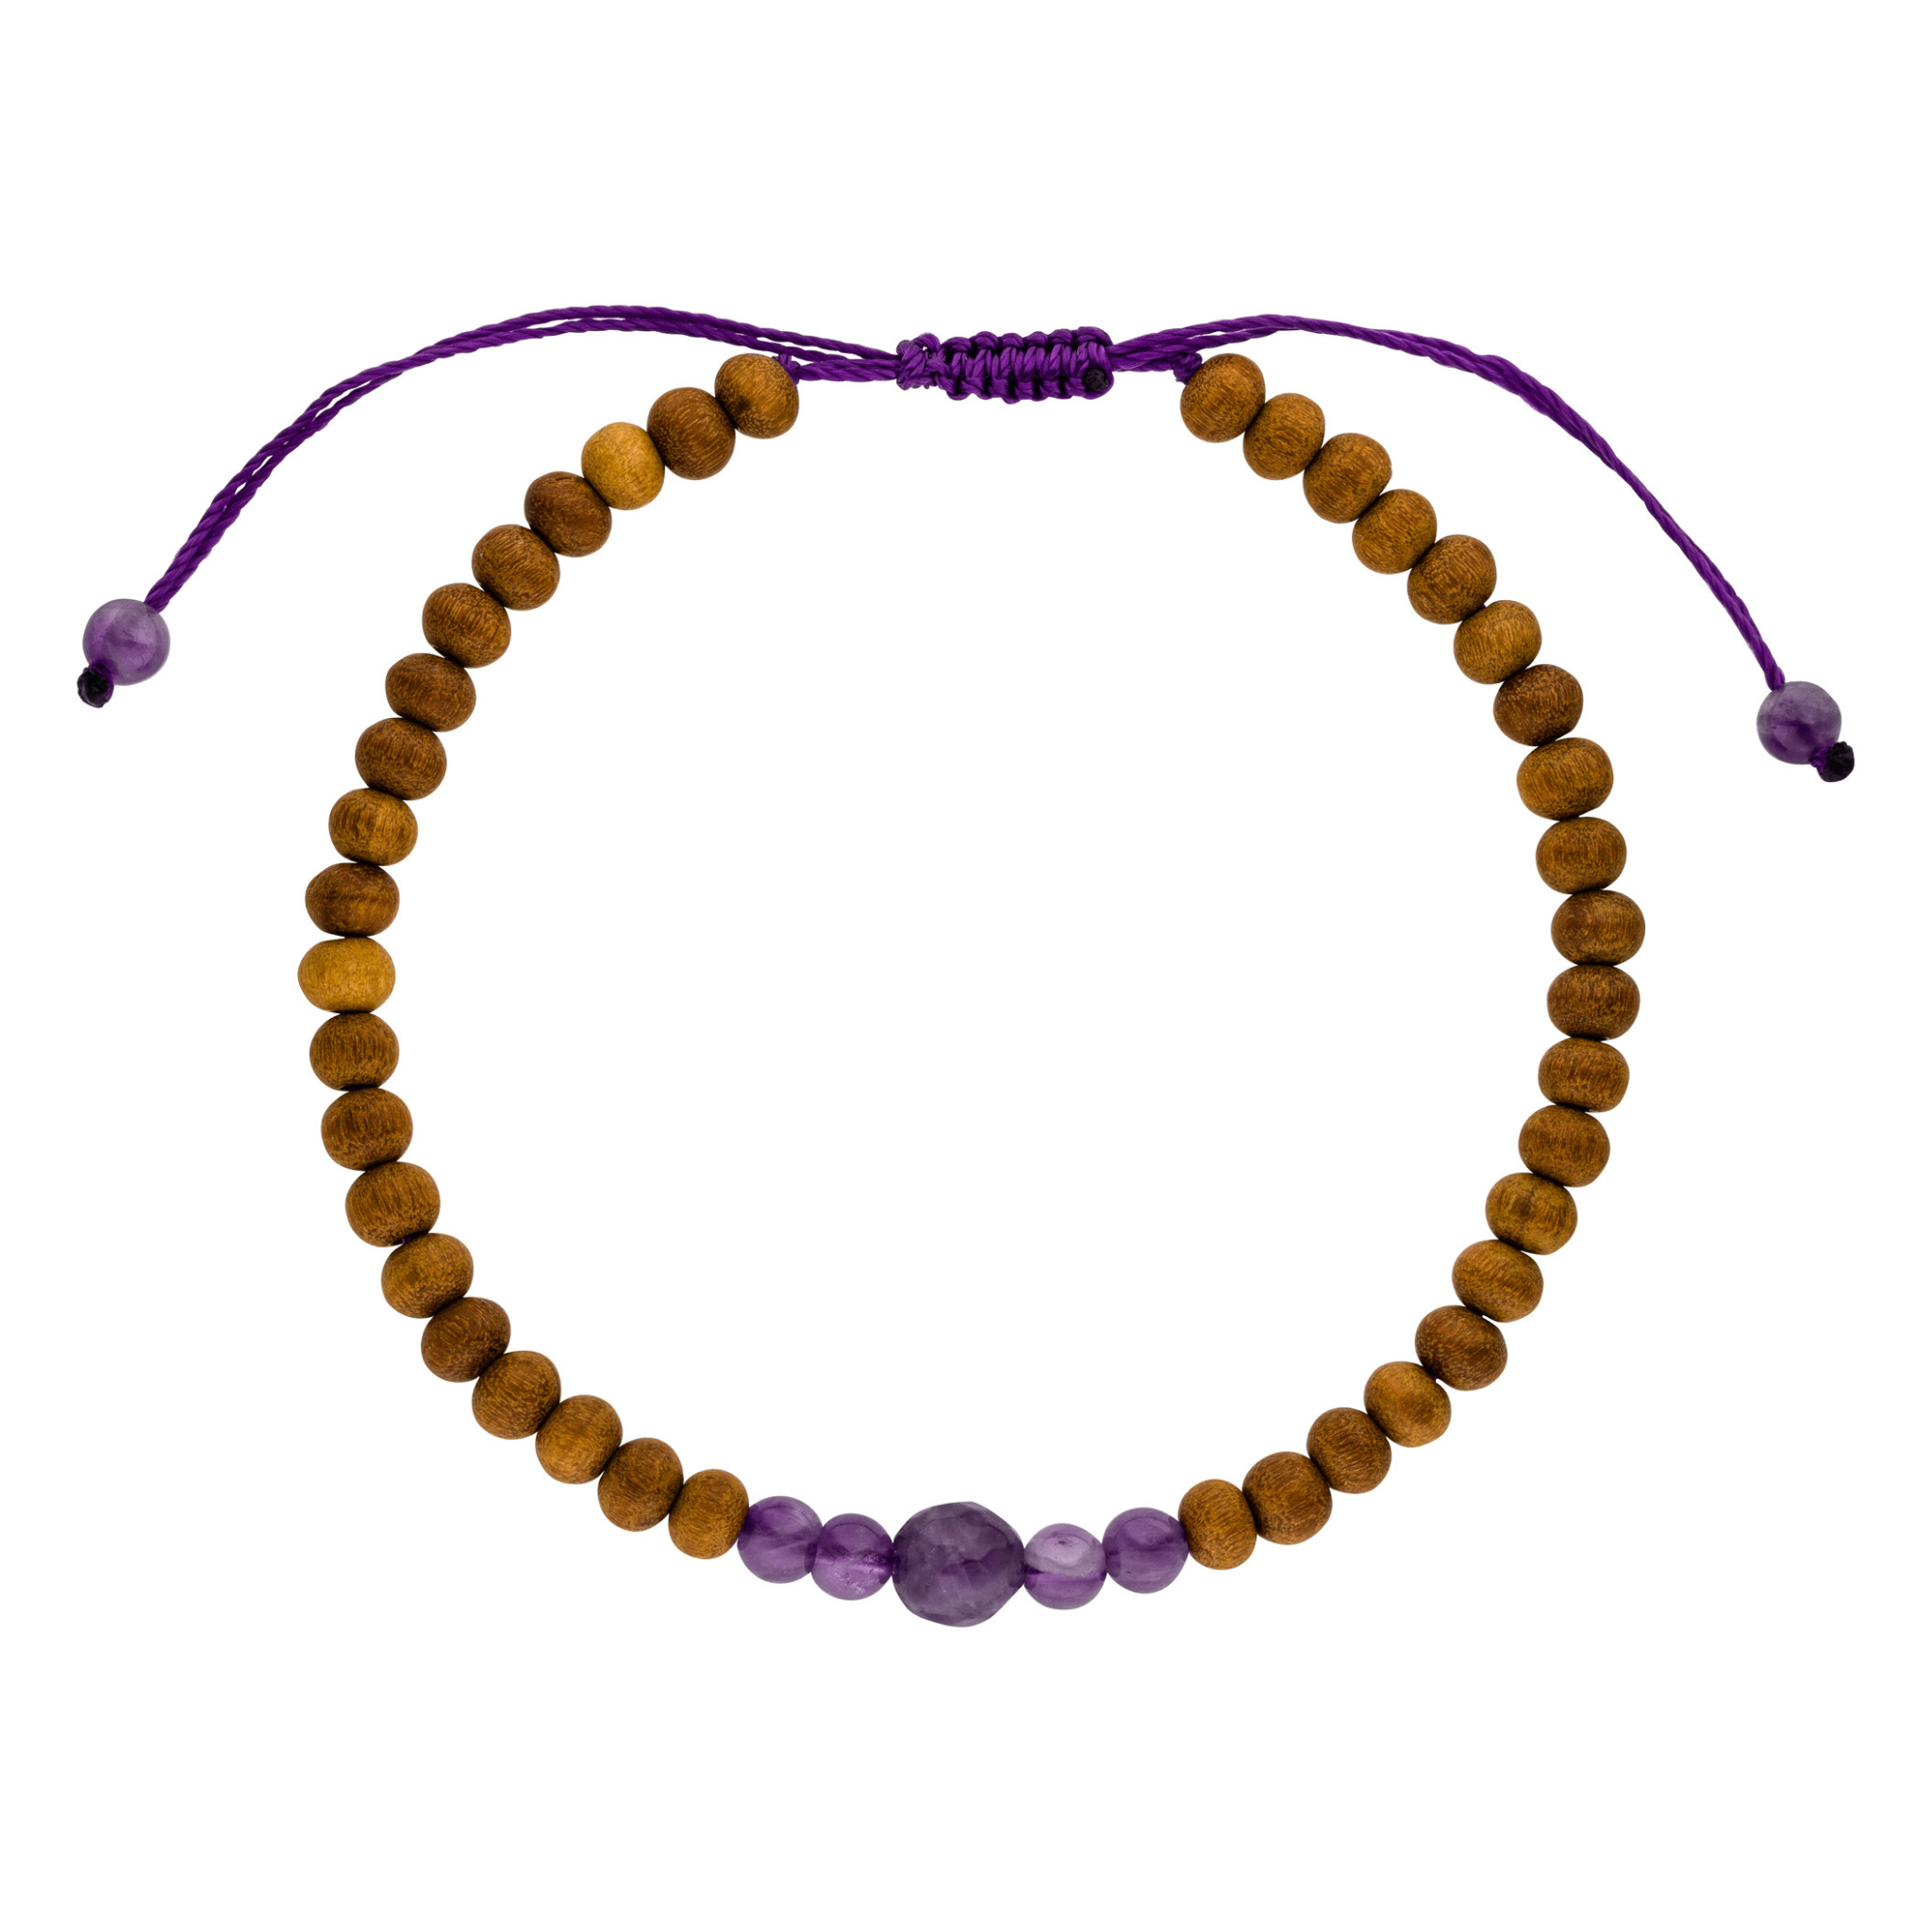 Chakra Armband Kronenchakra mit lilafarbenen Amethyst Steinen und zarten Sandelholz Perlen. Einheitsgröße.